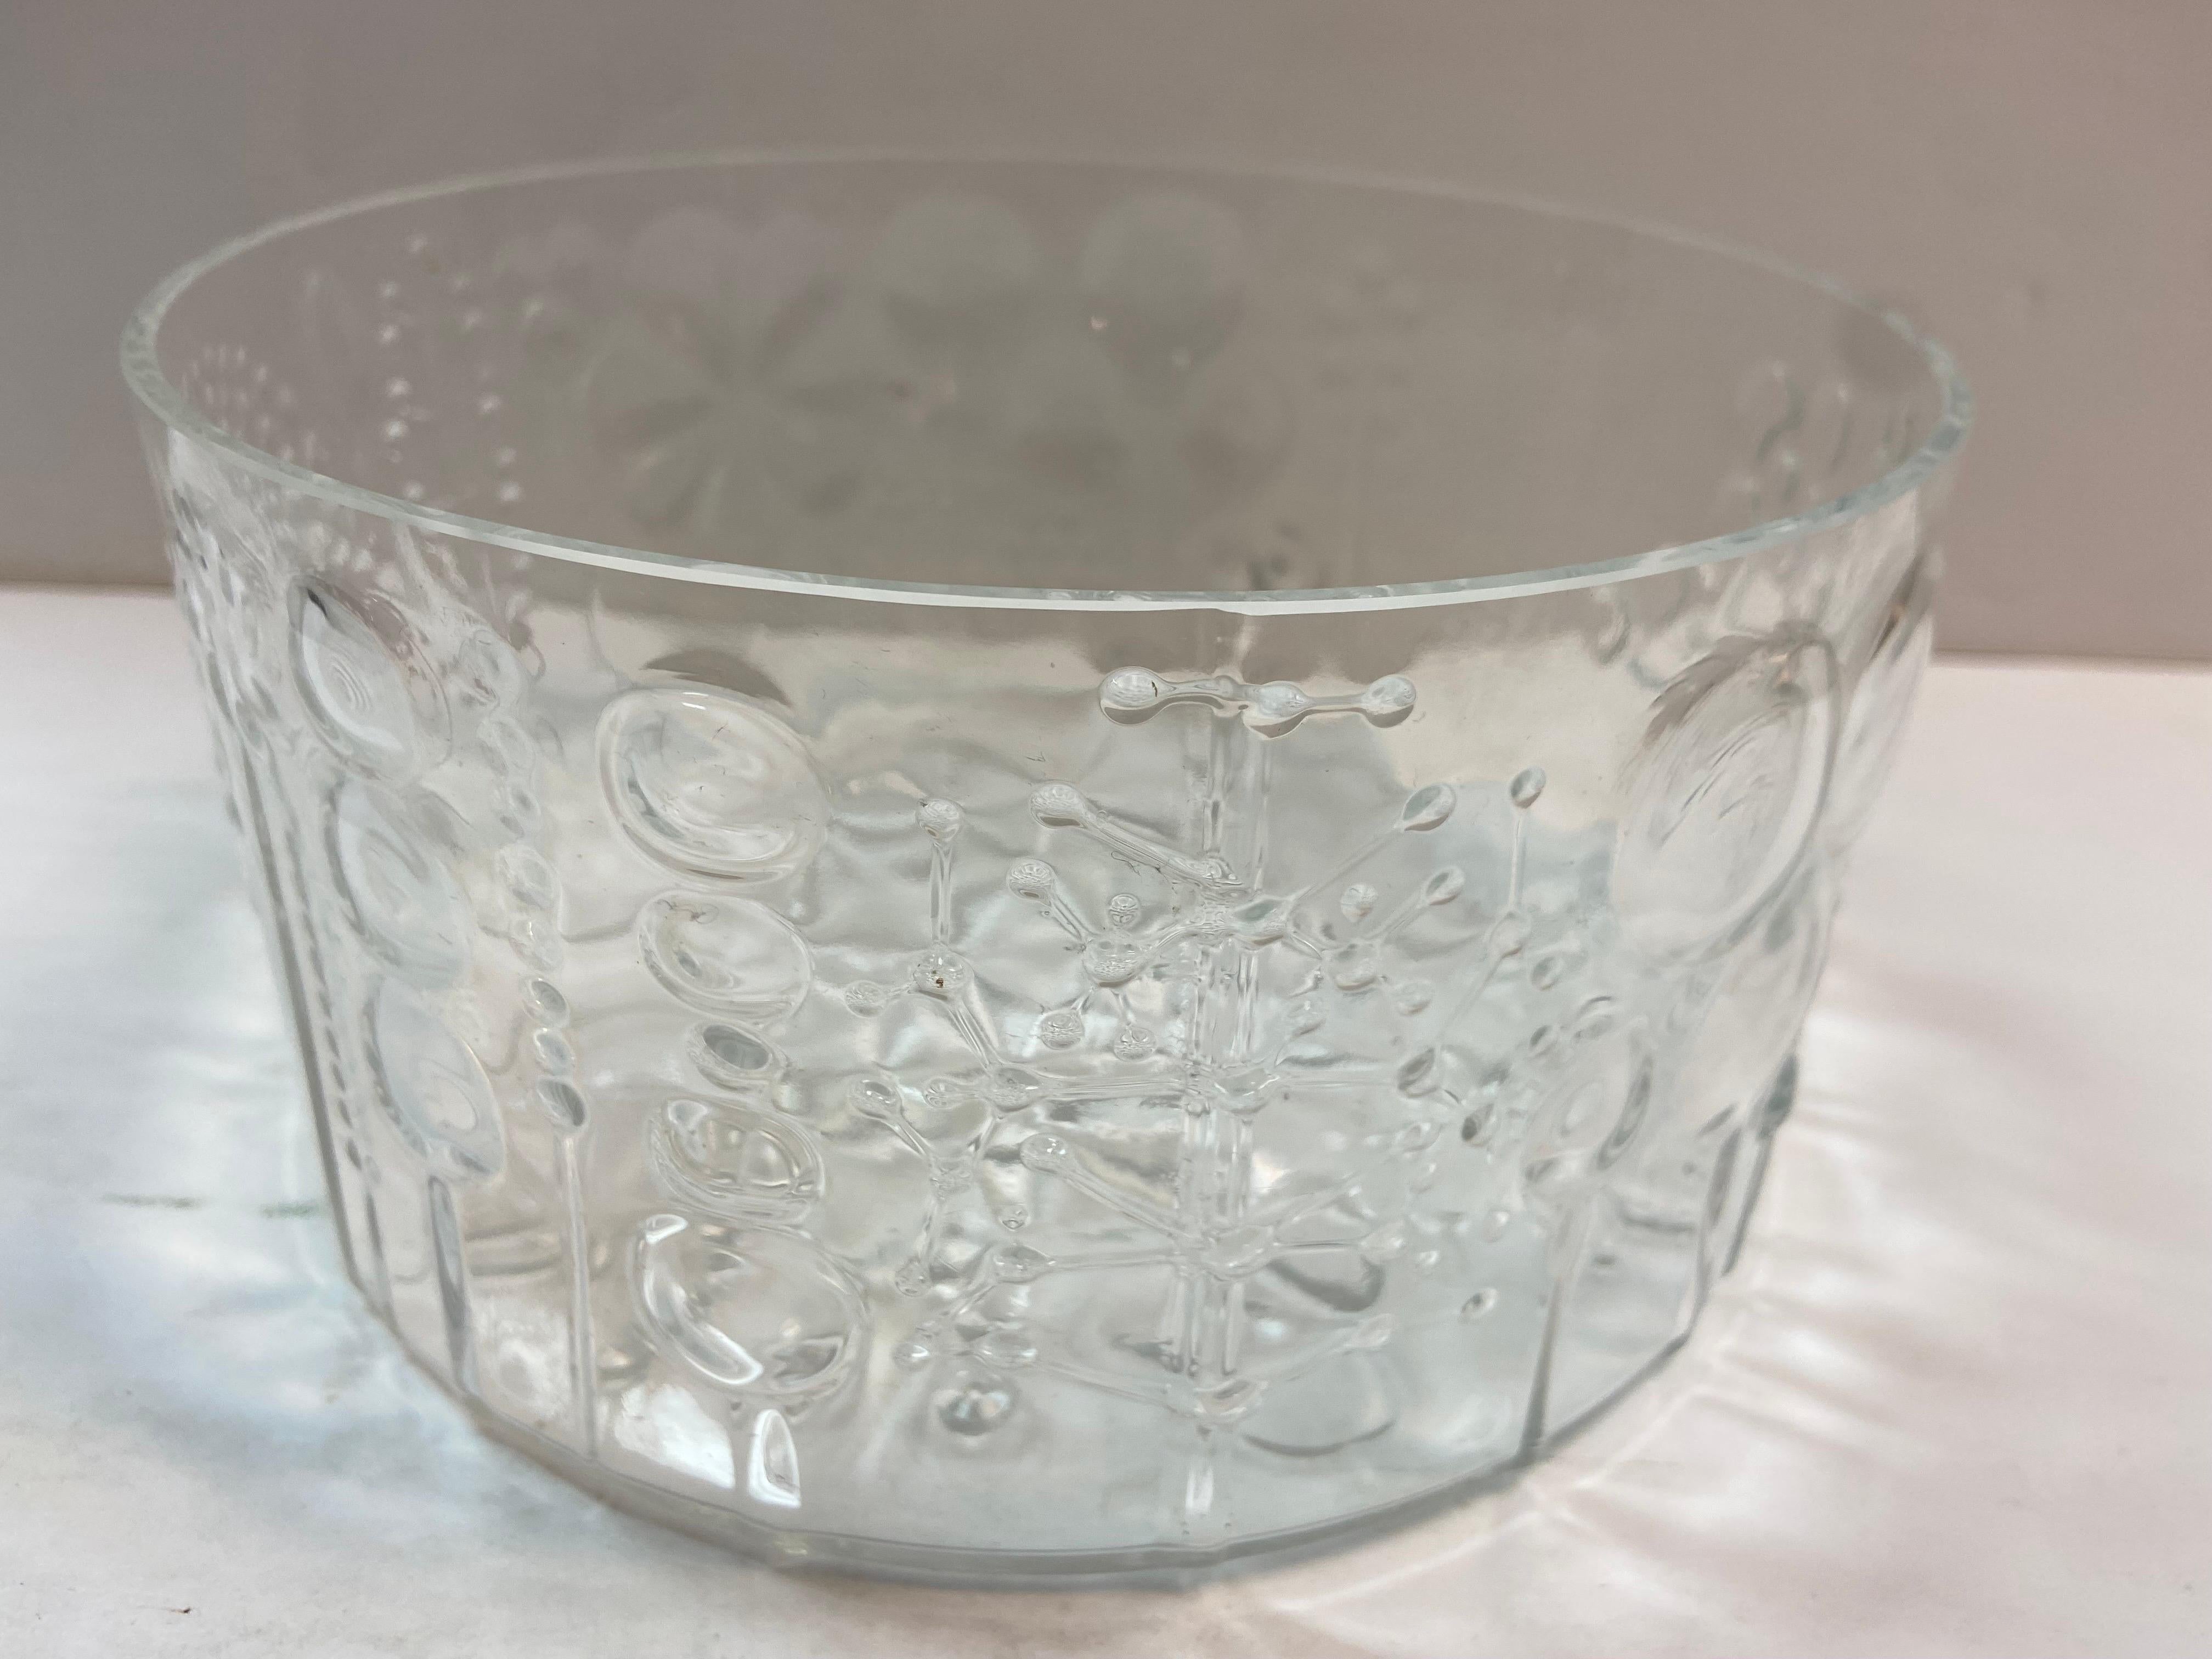 Un saladier vintage en verre transparent par Oiva Toikka pour Nuutajarvi Notsjo qui est devenu plus tard Iittala. Ce dessin s'appelle Flora et a été réalisé en 1966. Ce grand bol de service en verre présente un magnifique motif de fleurs abstraites.